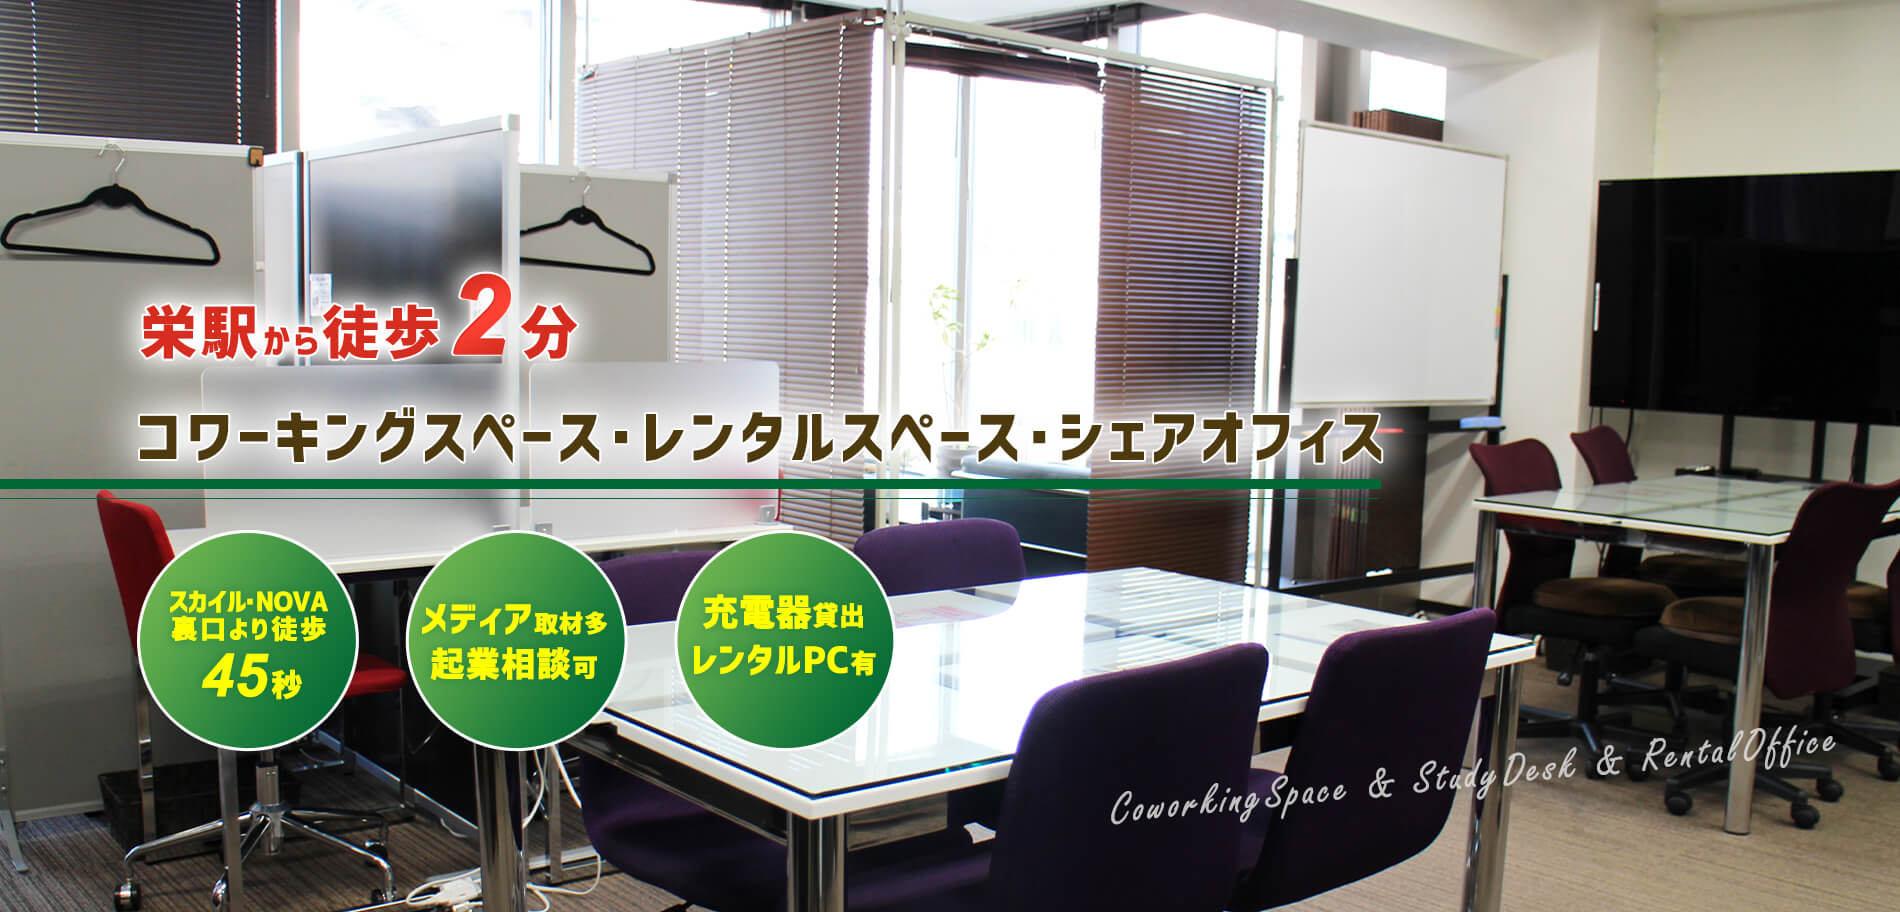 栄コワーキングスペース自習室